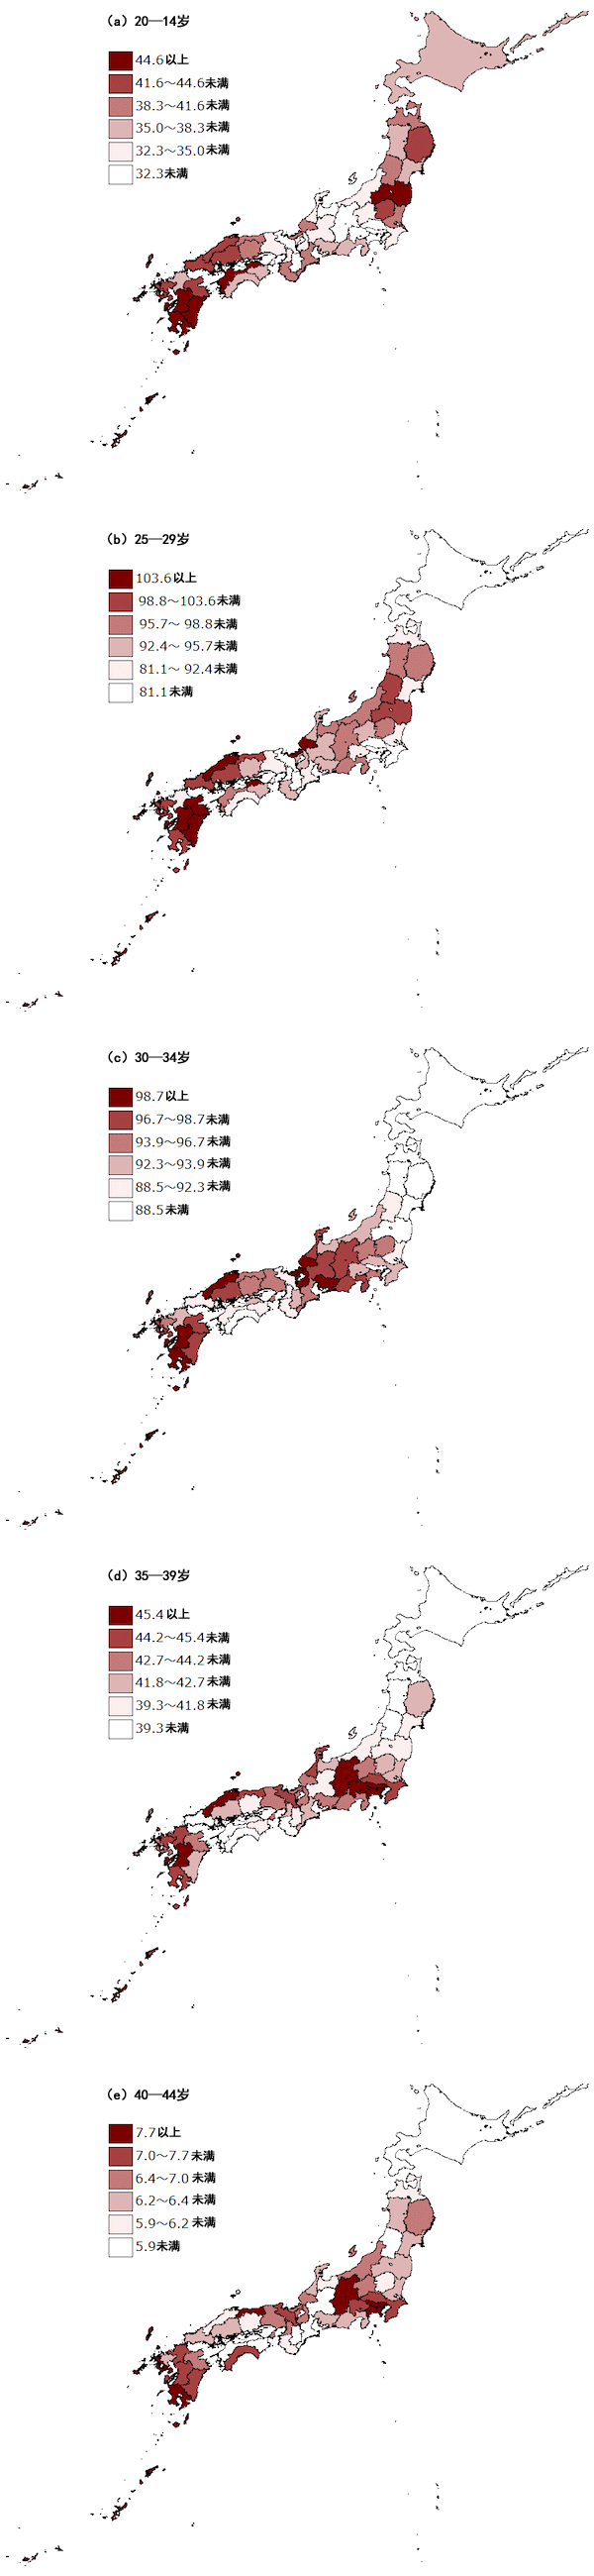 图6：各都道府县年龄阶梯（以5岁为阶梯）的生育率（女性人口每千人）